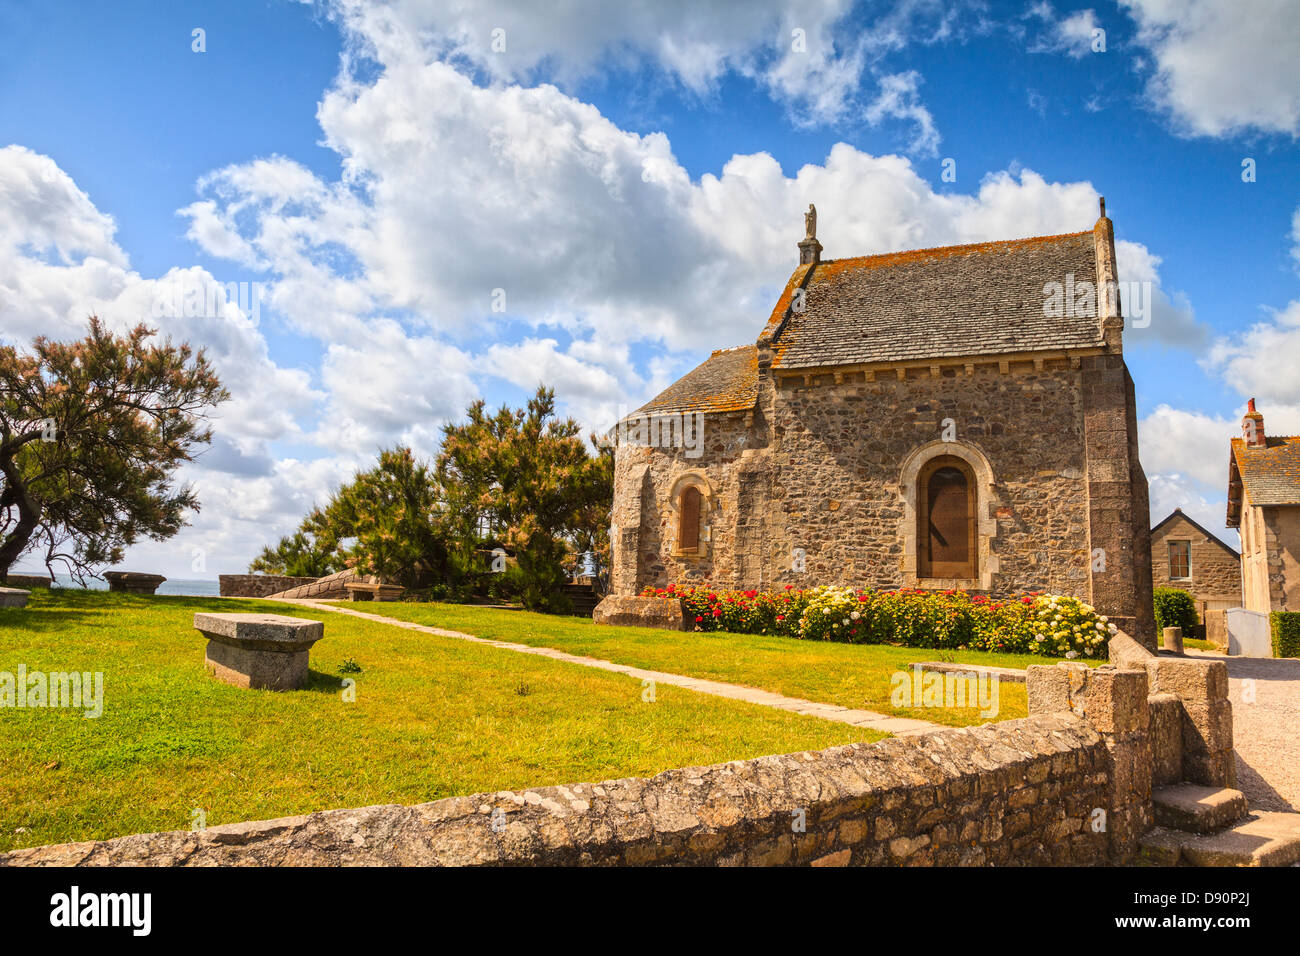 La chapelle des Marins de style romain, dans le petit port de pêche de St-Vaast-La-Hougue, Normandie, France. C'était à l'origine la... Banque D'Images